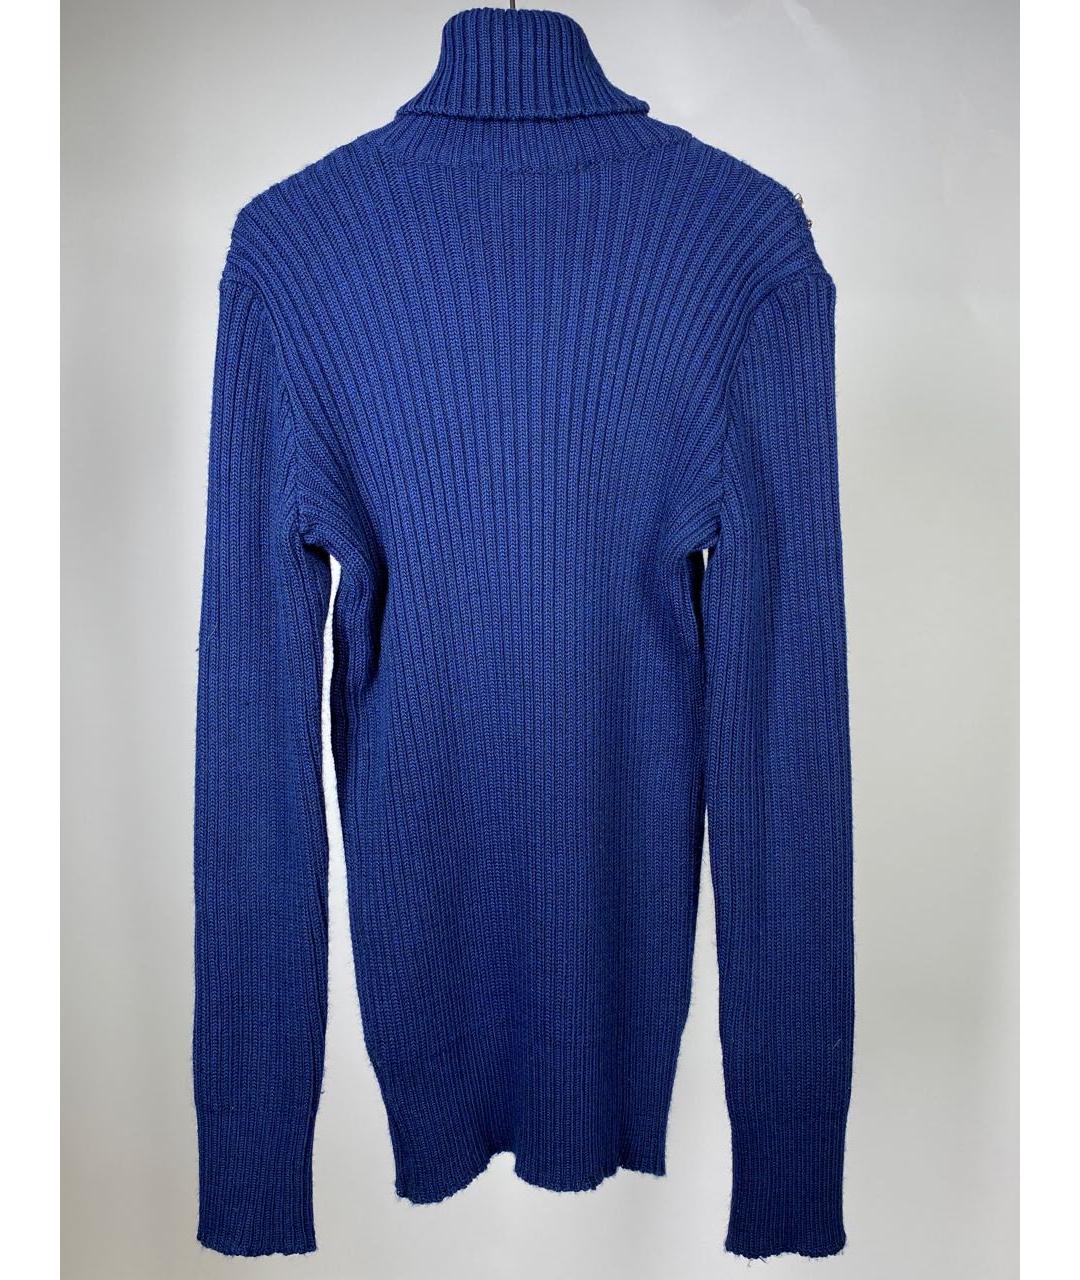 DALOOD Темно-синий шерстяной джемпер / свитер, фото 2